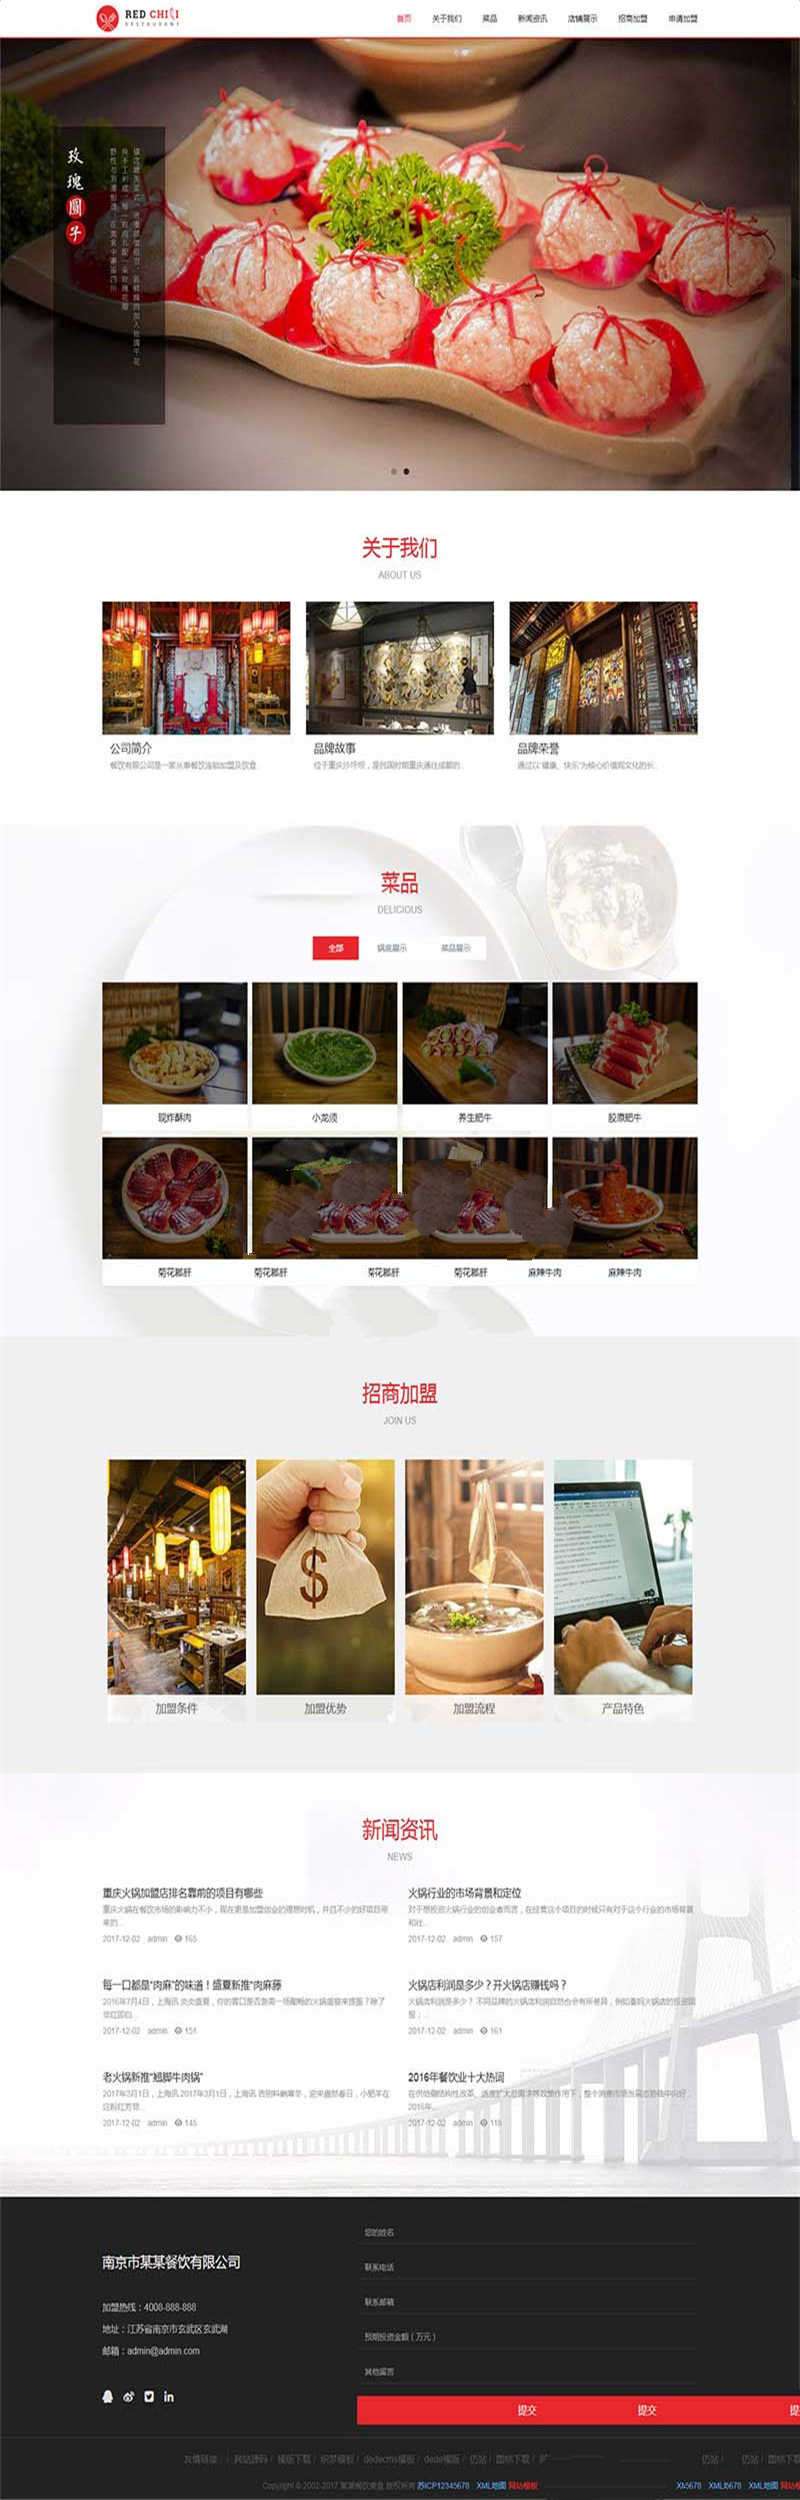 [企业源码]织梦dedecms响应式餐饮美食加盟企业网站模板(自适应手机移动端)插图